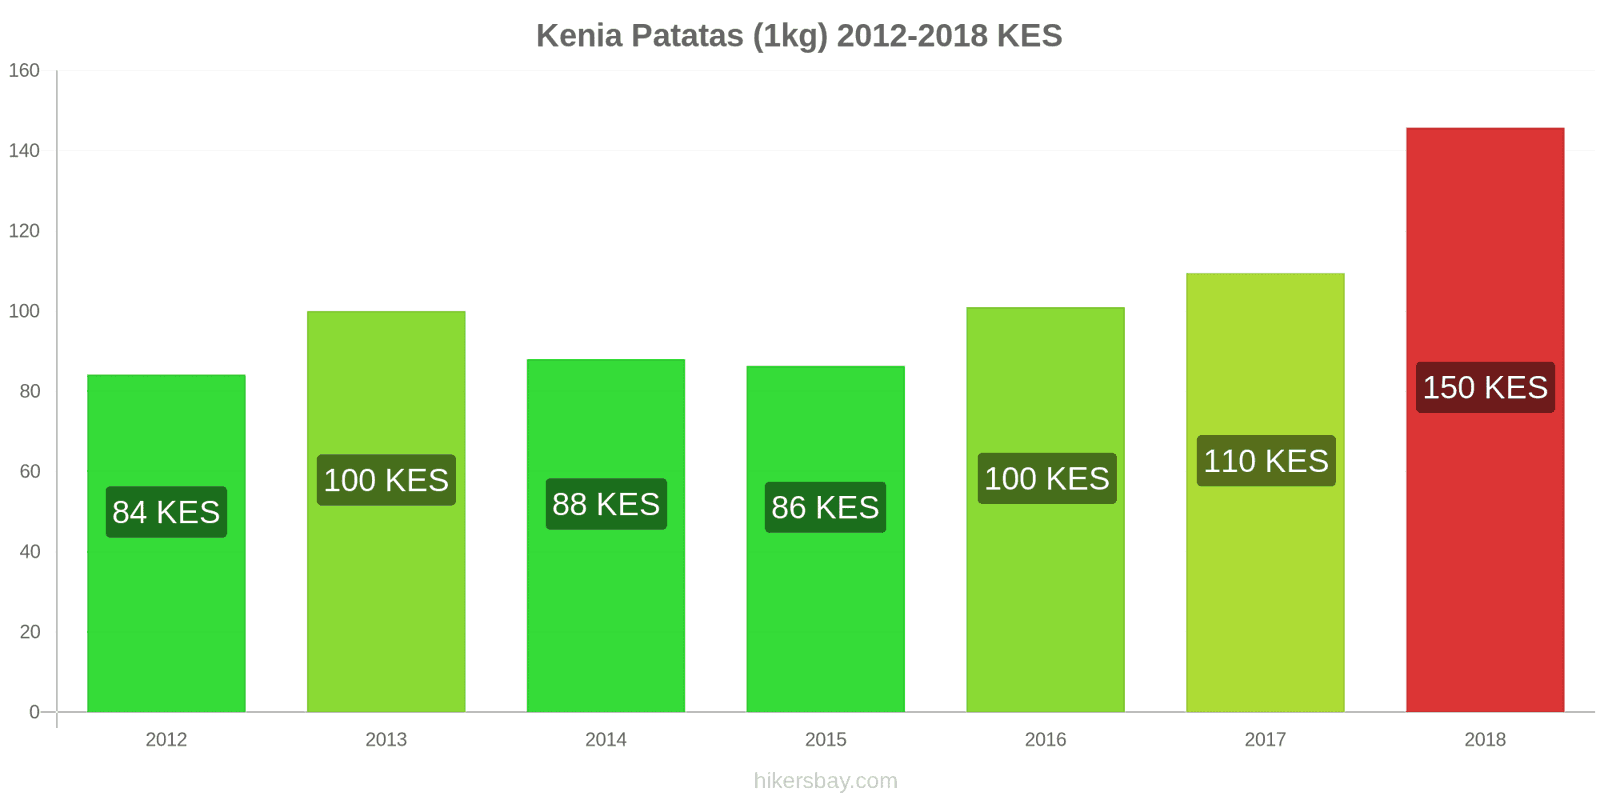 Kenia cambios de precios Patatas (1kg) hikersbay.com